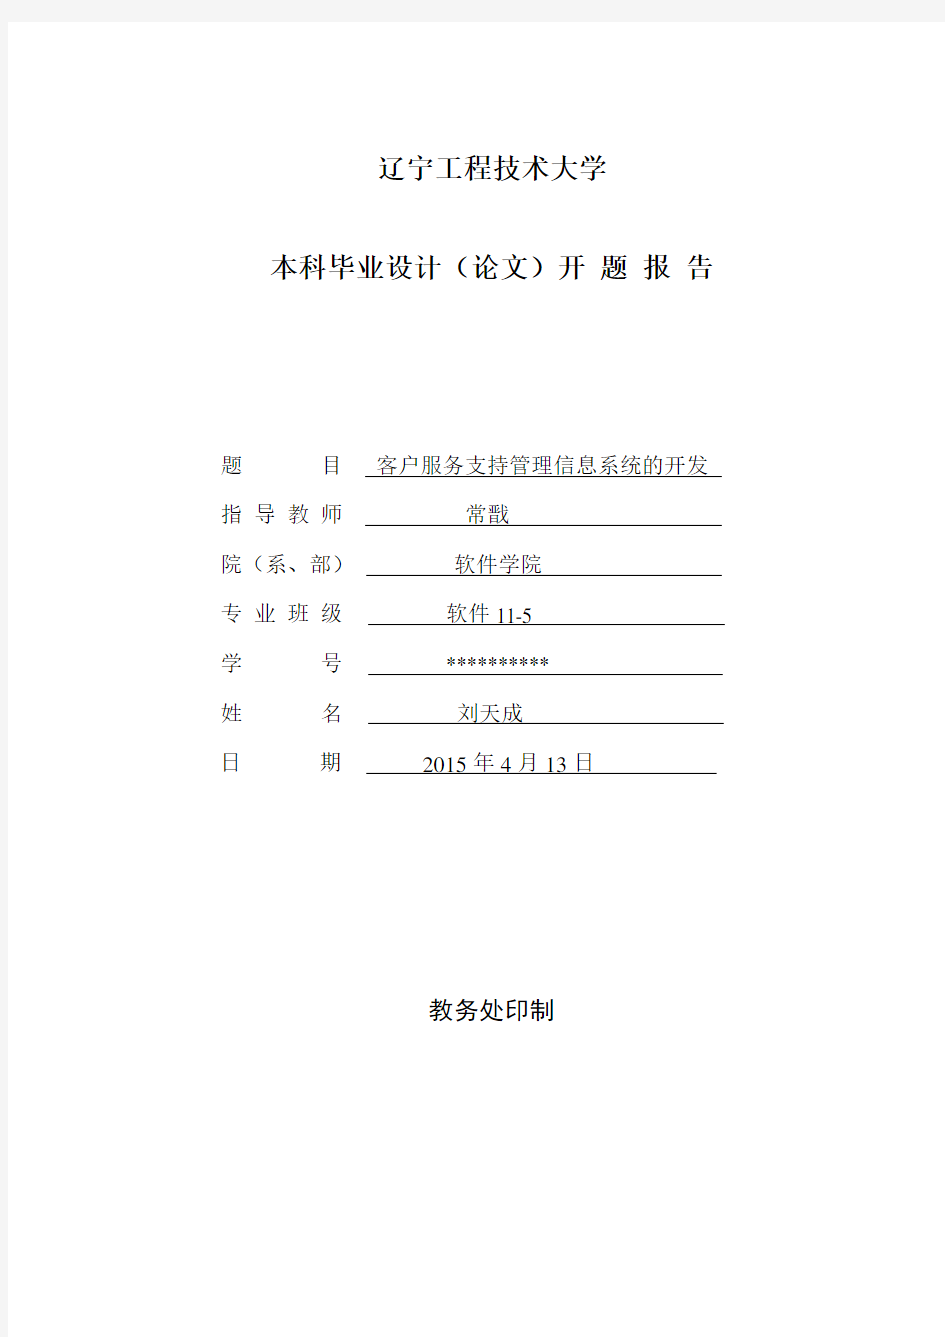 辽宁工程技术大学软件学院毕业设计(论文)开题报告